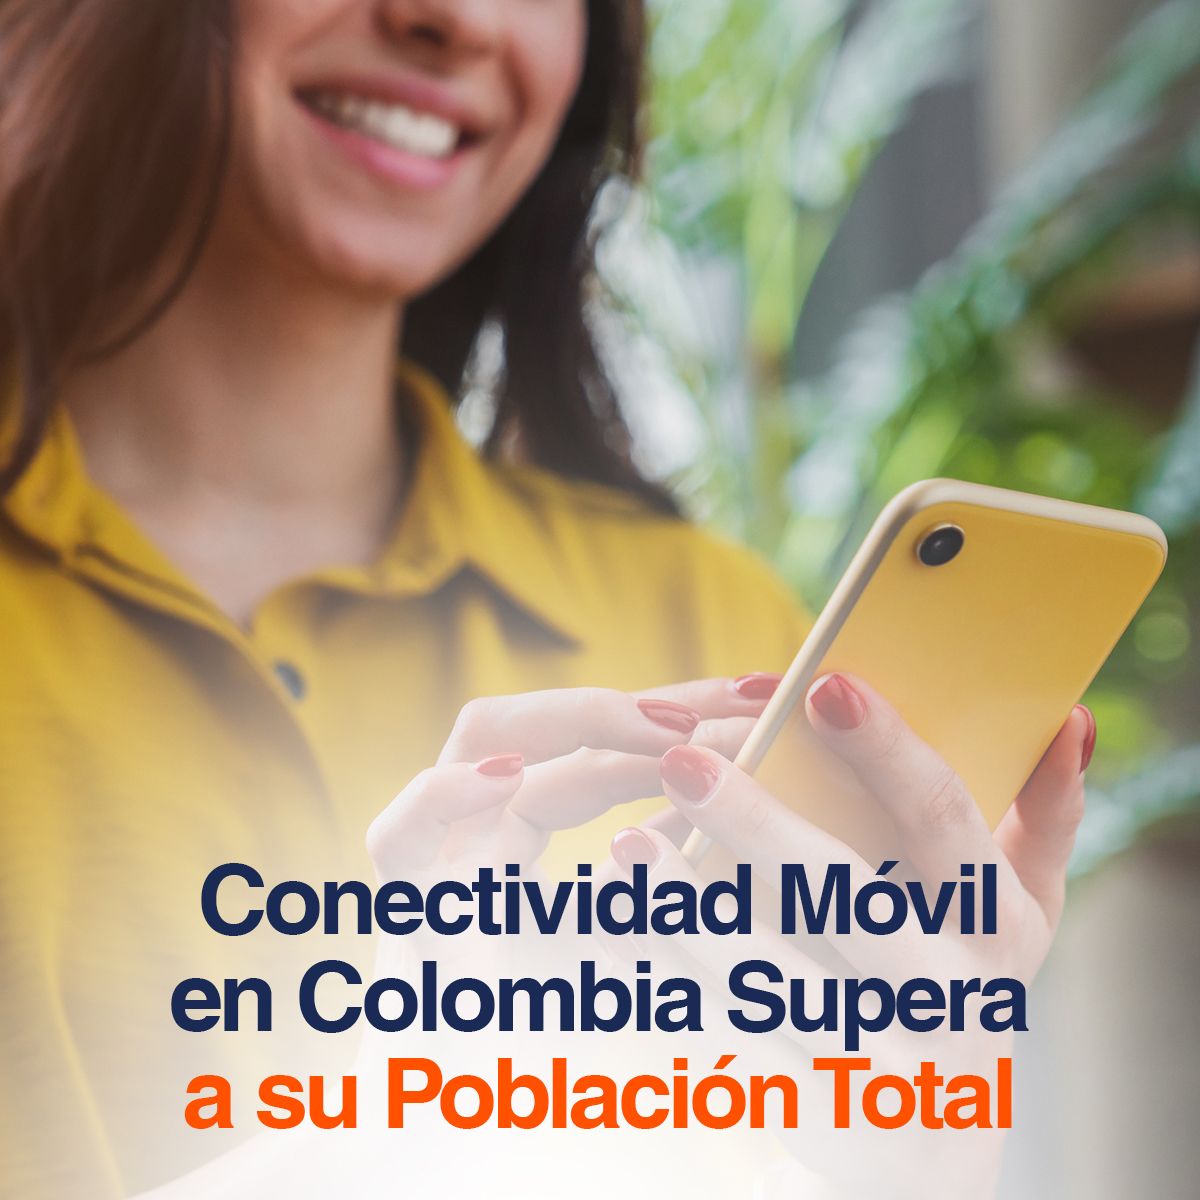 Conectividad Móvil en Colombia Supera a su Población Total